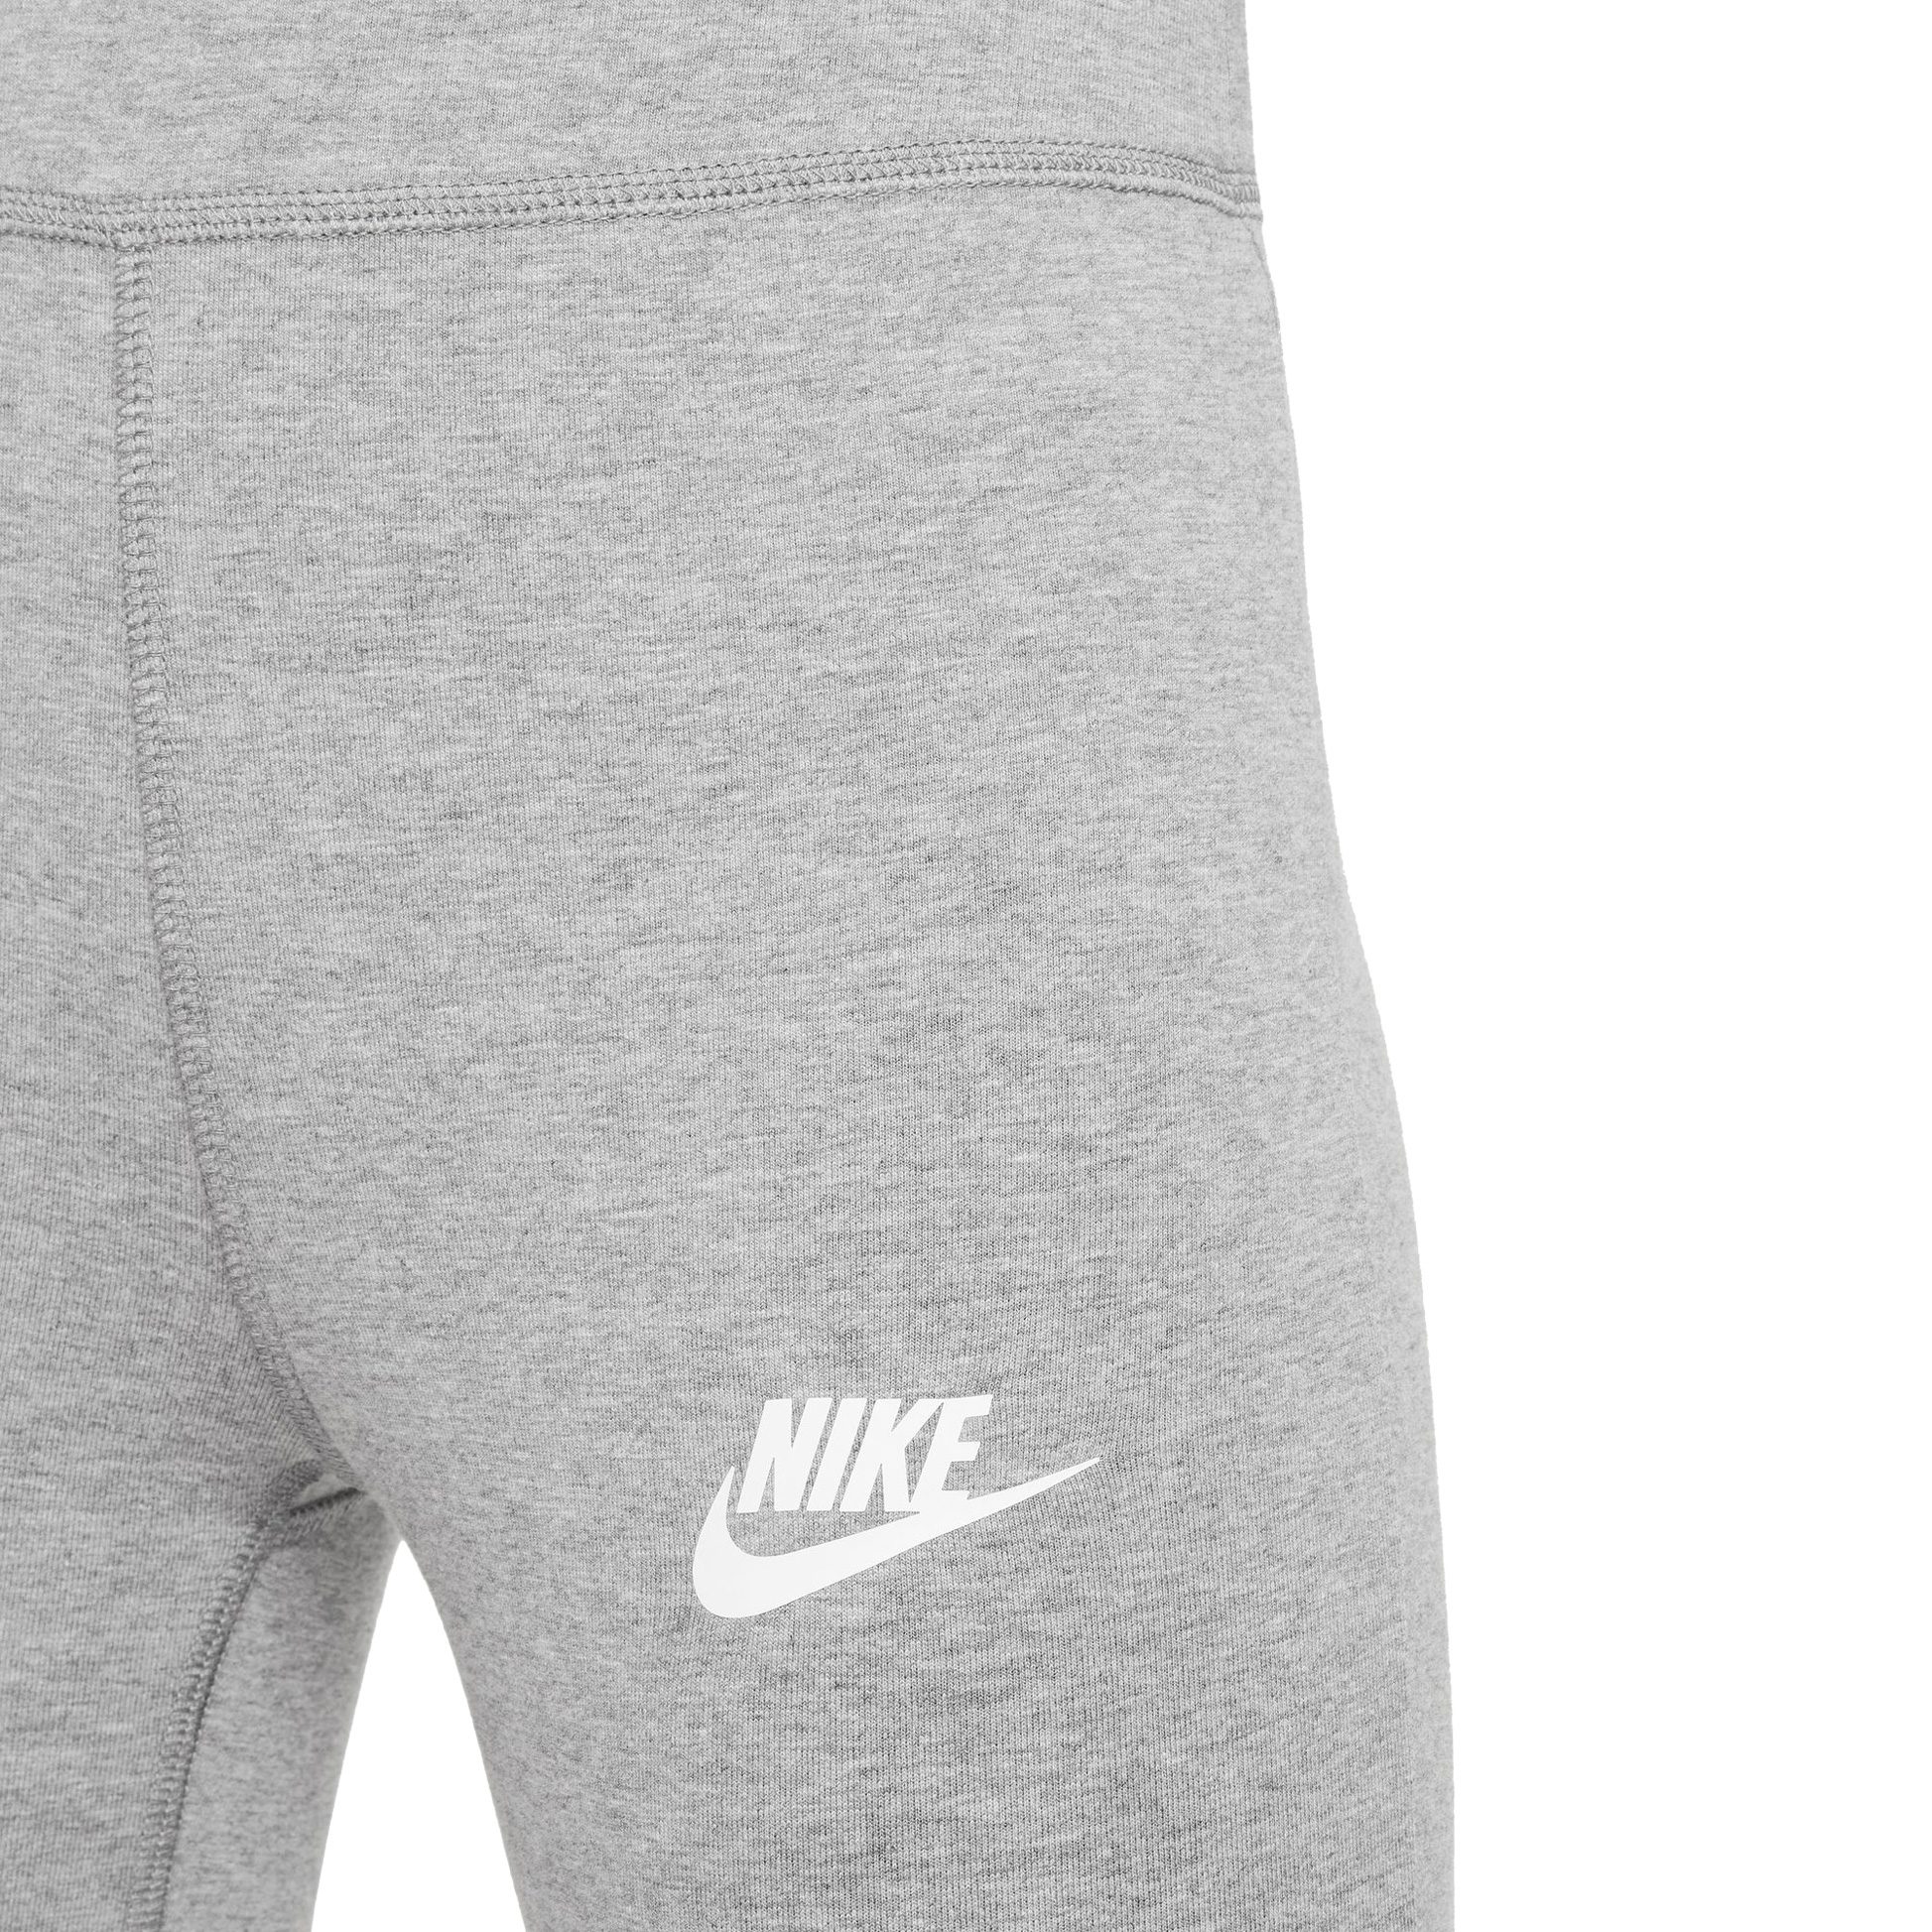 Bittl Mädchen Leggings Sportswear carbon Shop - Sport Favorites heather im kaufen Nike